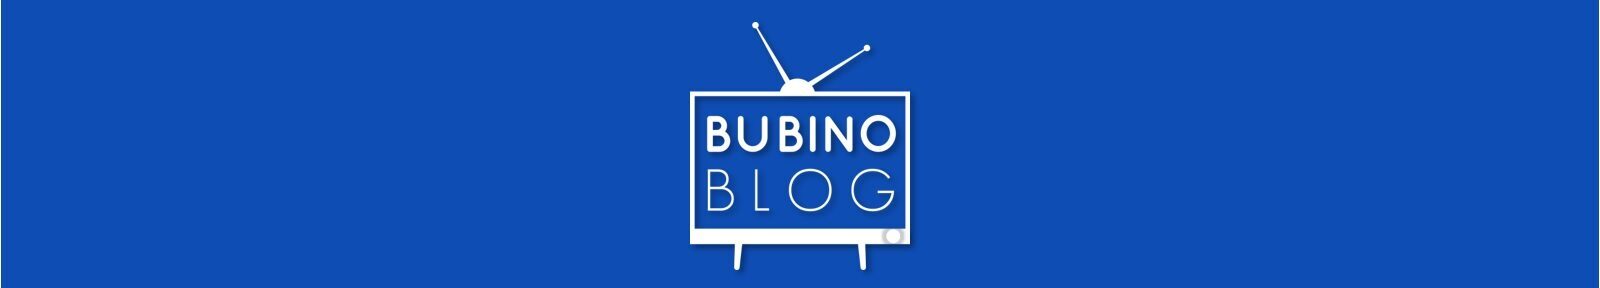 BubinoBlog - Ascolti e Notizie sulla Tv